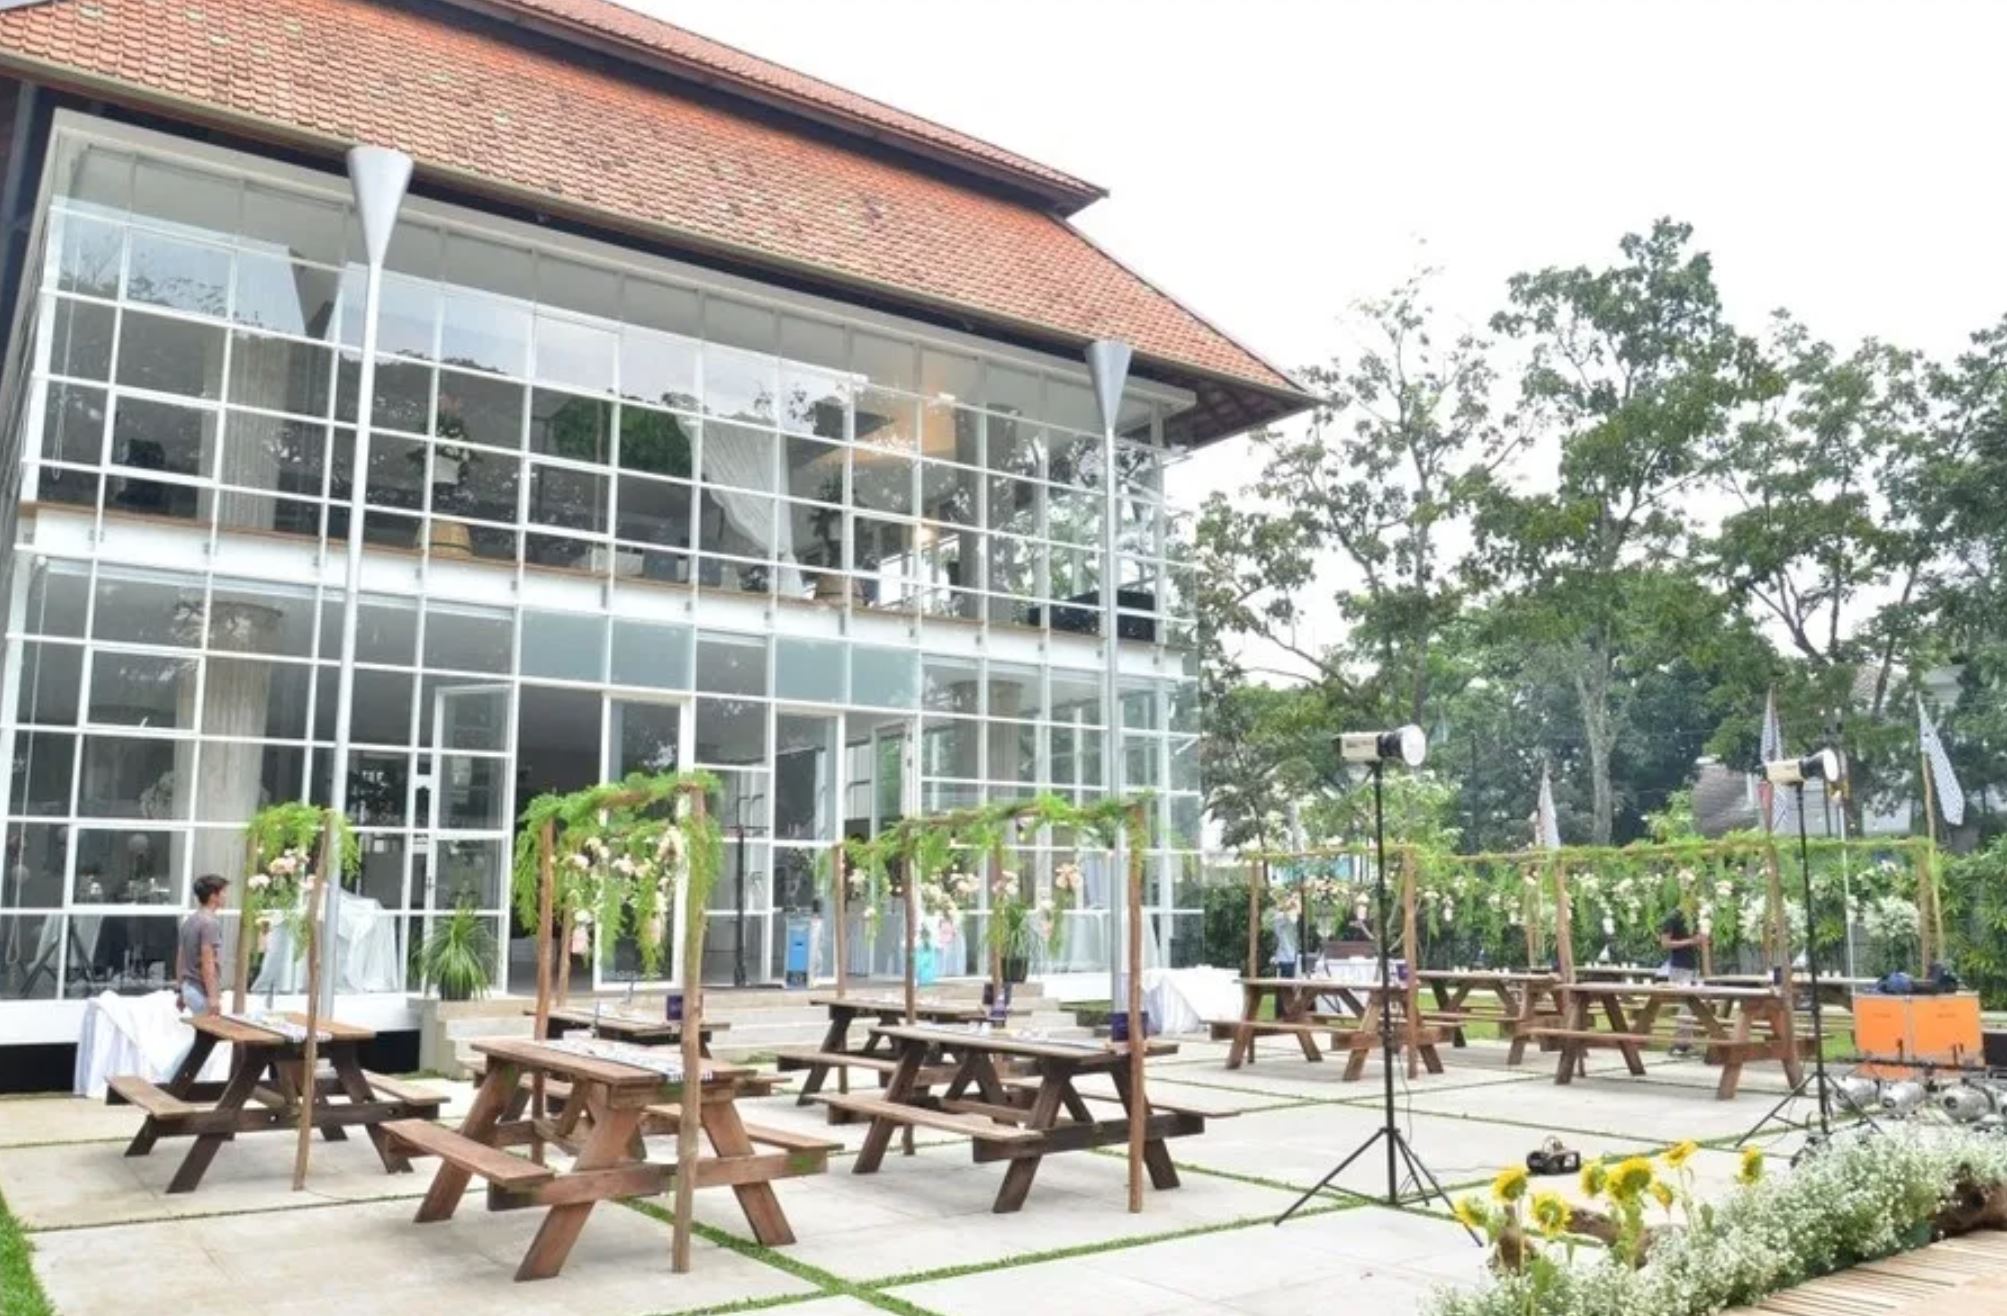 Tempat Prewed Indoor Bandung : Referensi Terbaik Tempat/Lokasi Pre wedding di Bandung ...